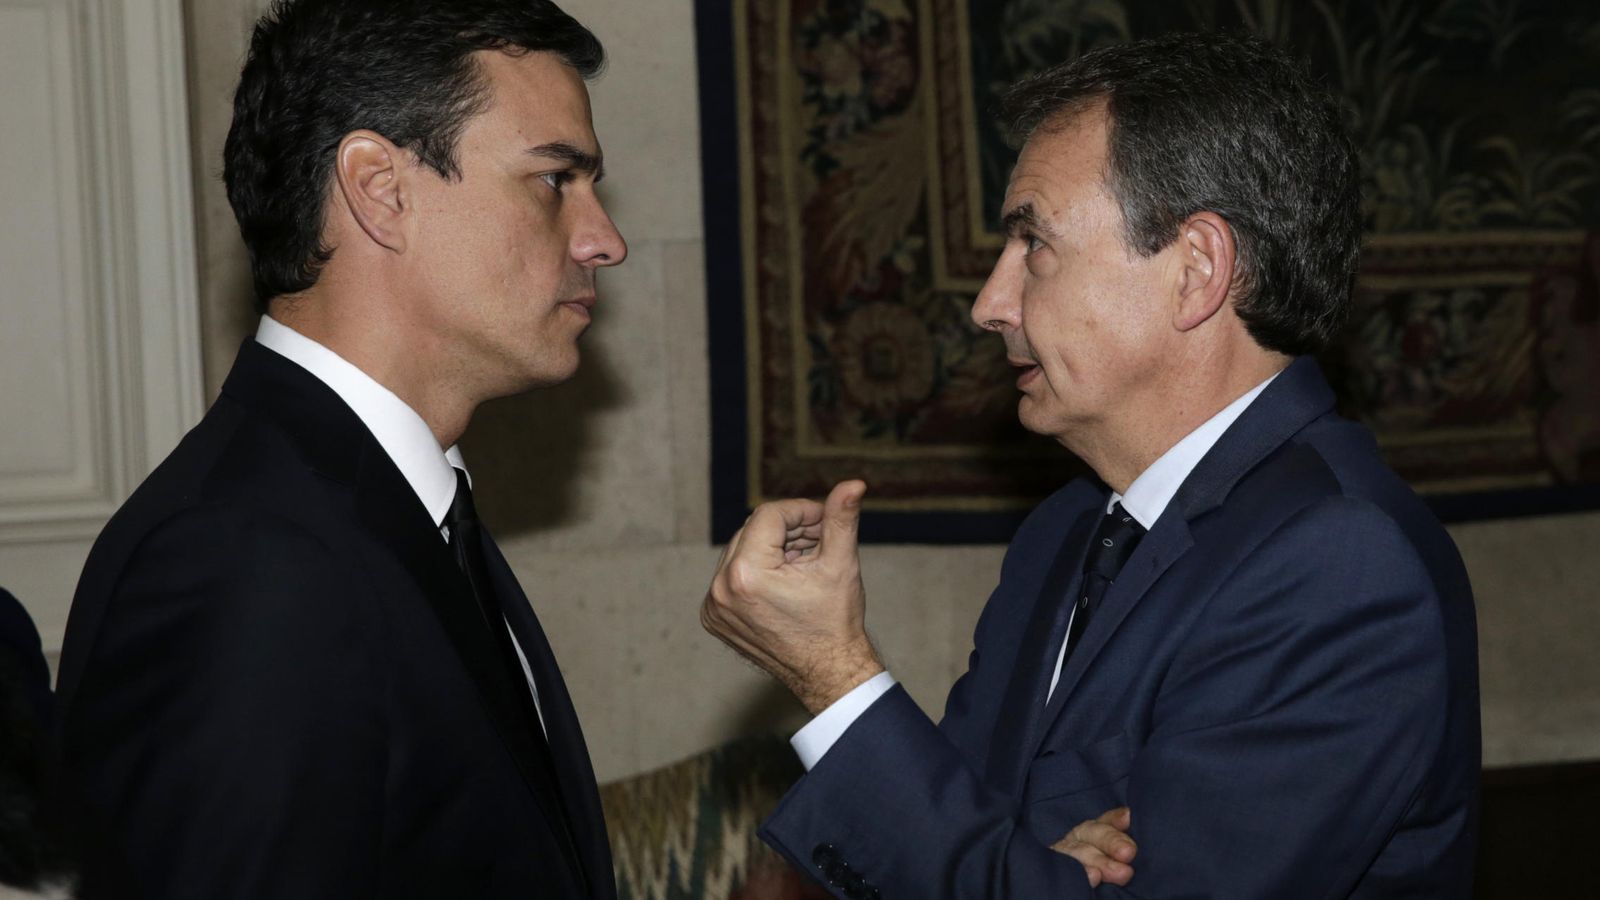 Foto: Pedro Sánchez conversa con José Luis Rodríguez Zapatero en la residencia del embajador francés, Yves Saint-Geours, el pasado 14 de noviembre, tras los atentados de París. (EFE)